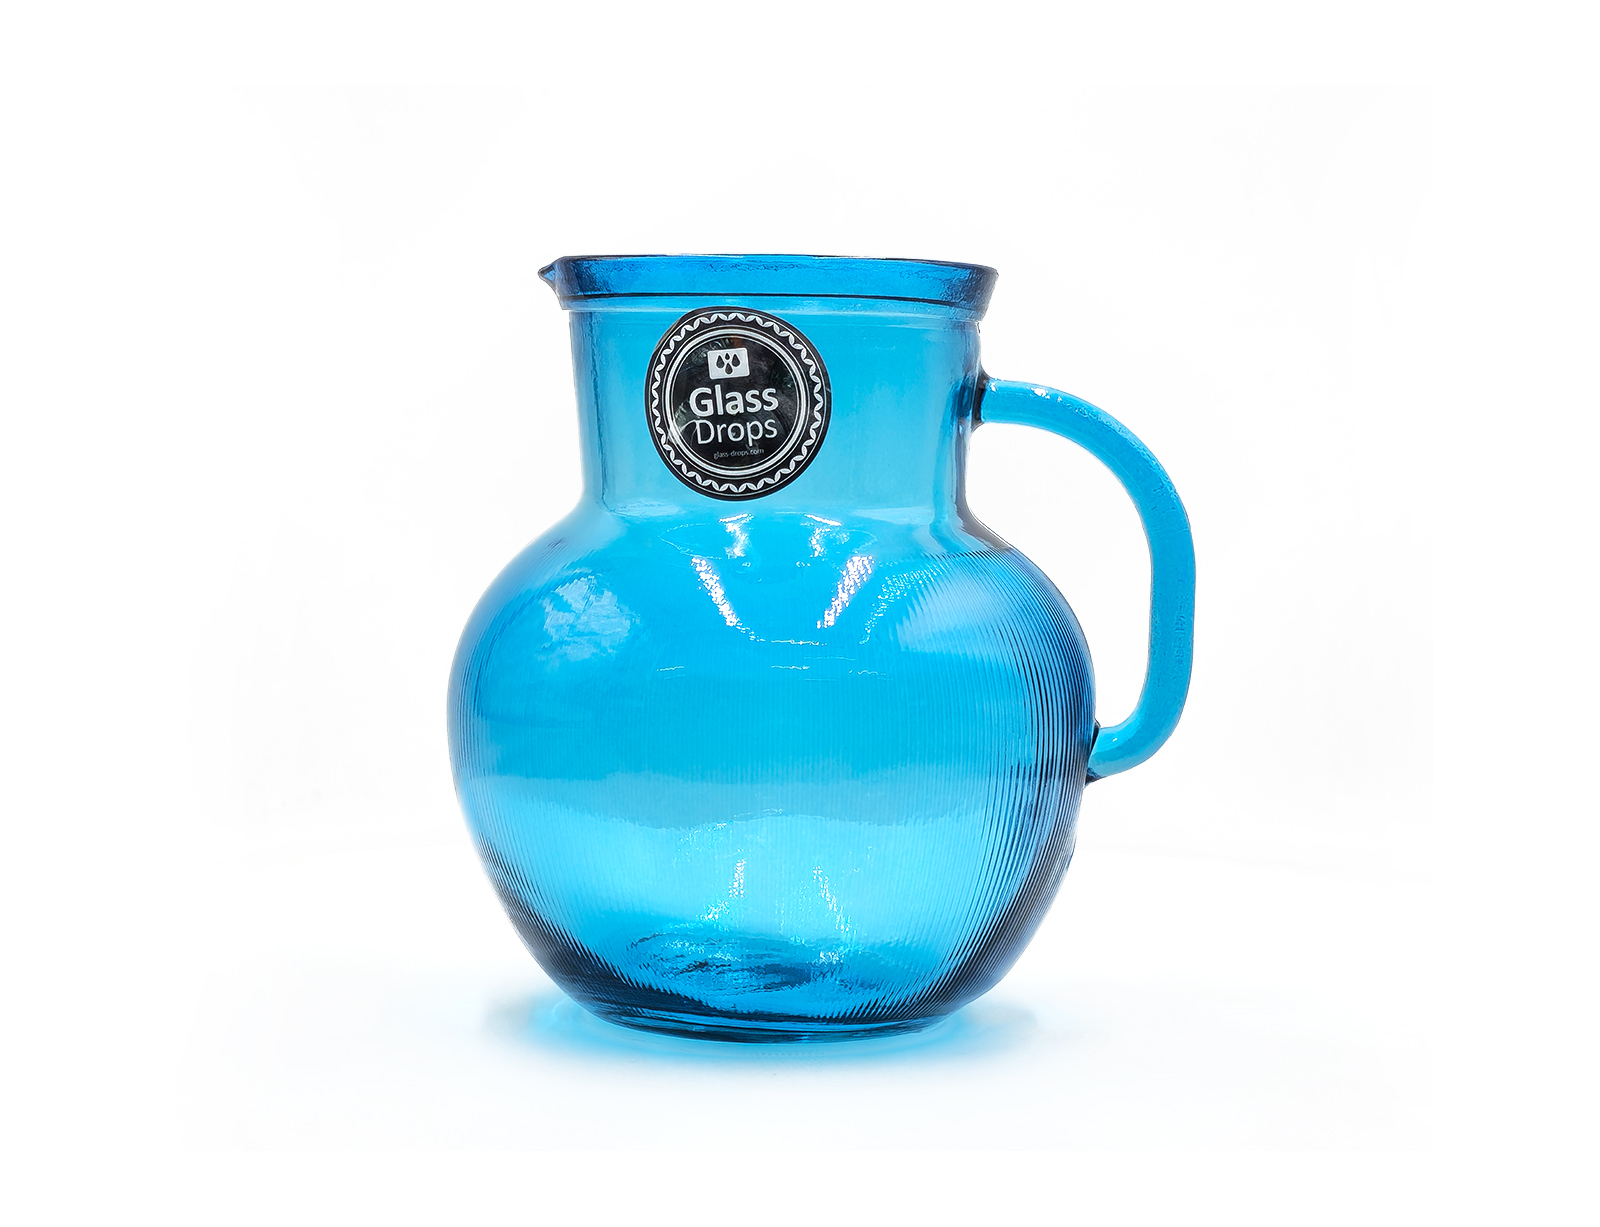 Εικόνα Κανάτα με χερούλι Glass Drops Ribbed (3198DB09) Από ανακυκλωμένο γυαλί, Χωρητικότητας 2.3L, Διαστάσεων Ø 20 x Υ 20 cm, Aqua Blue